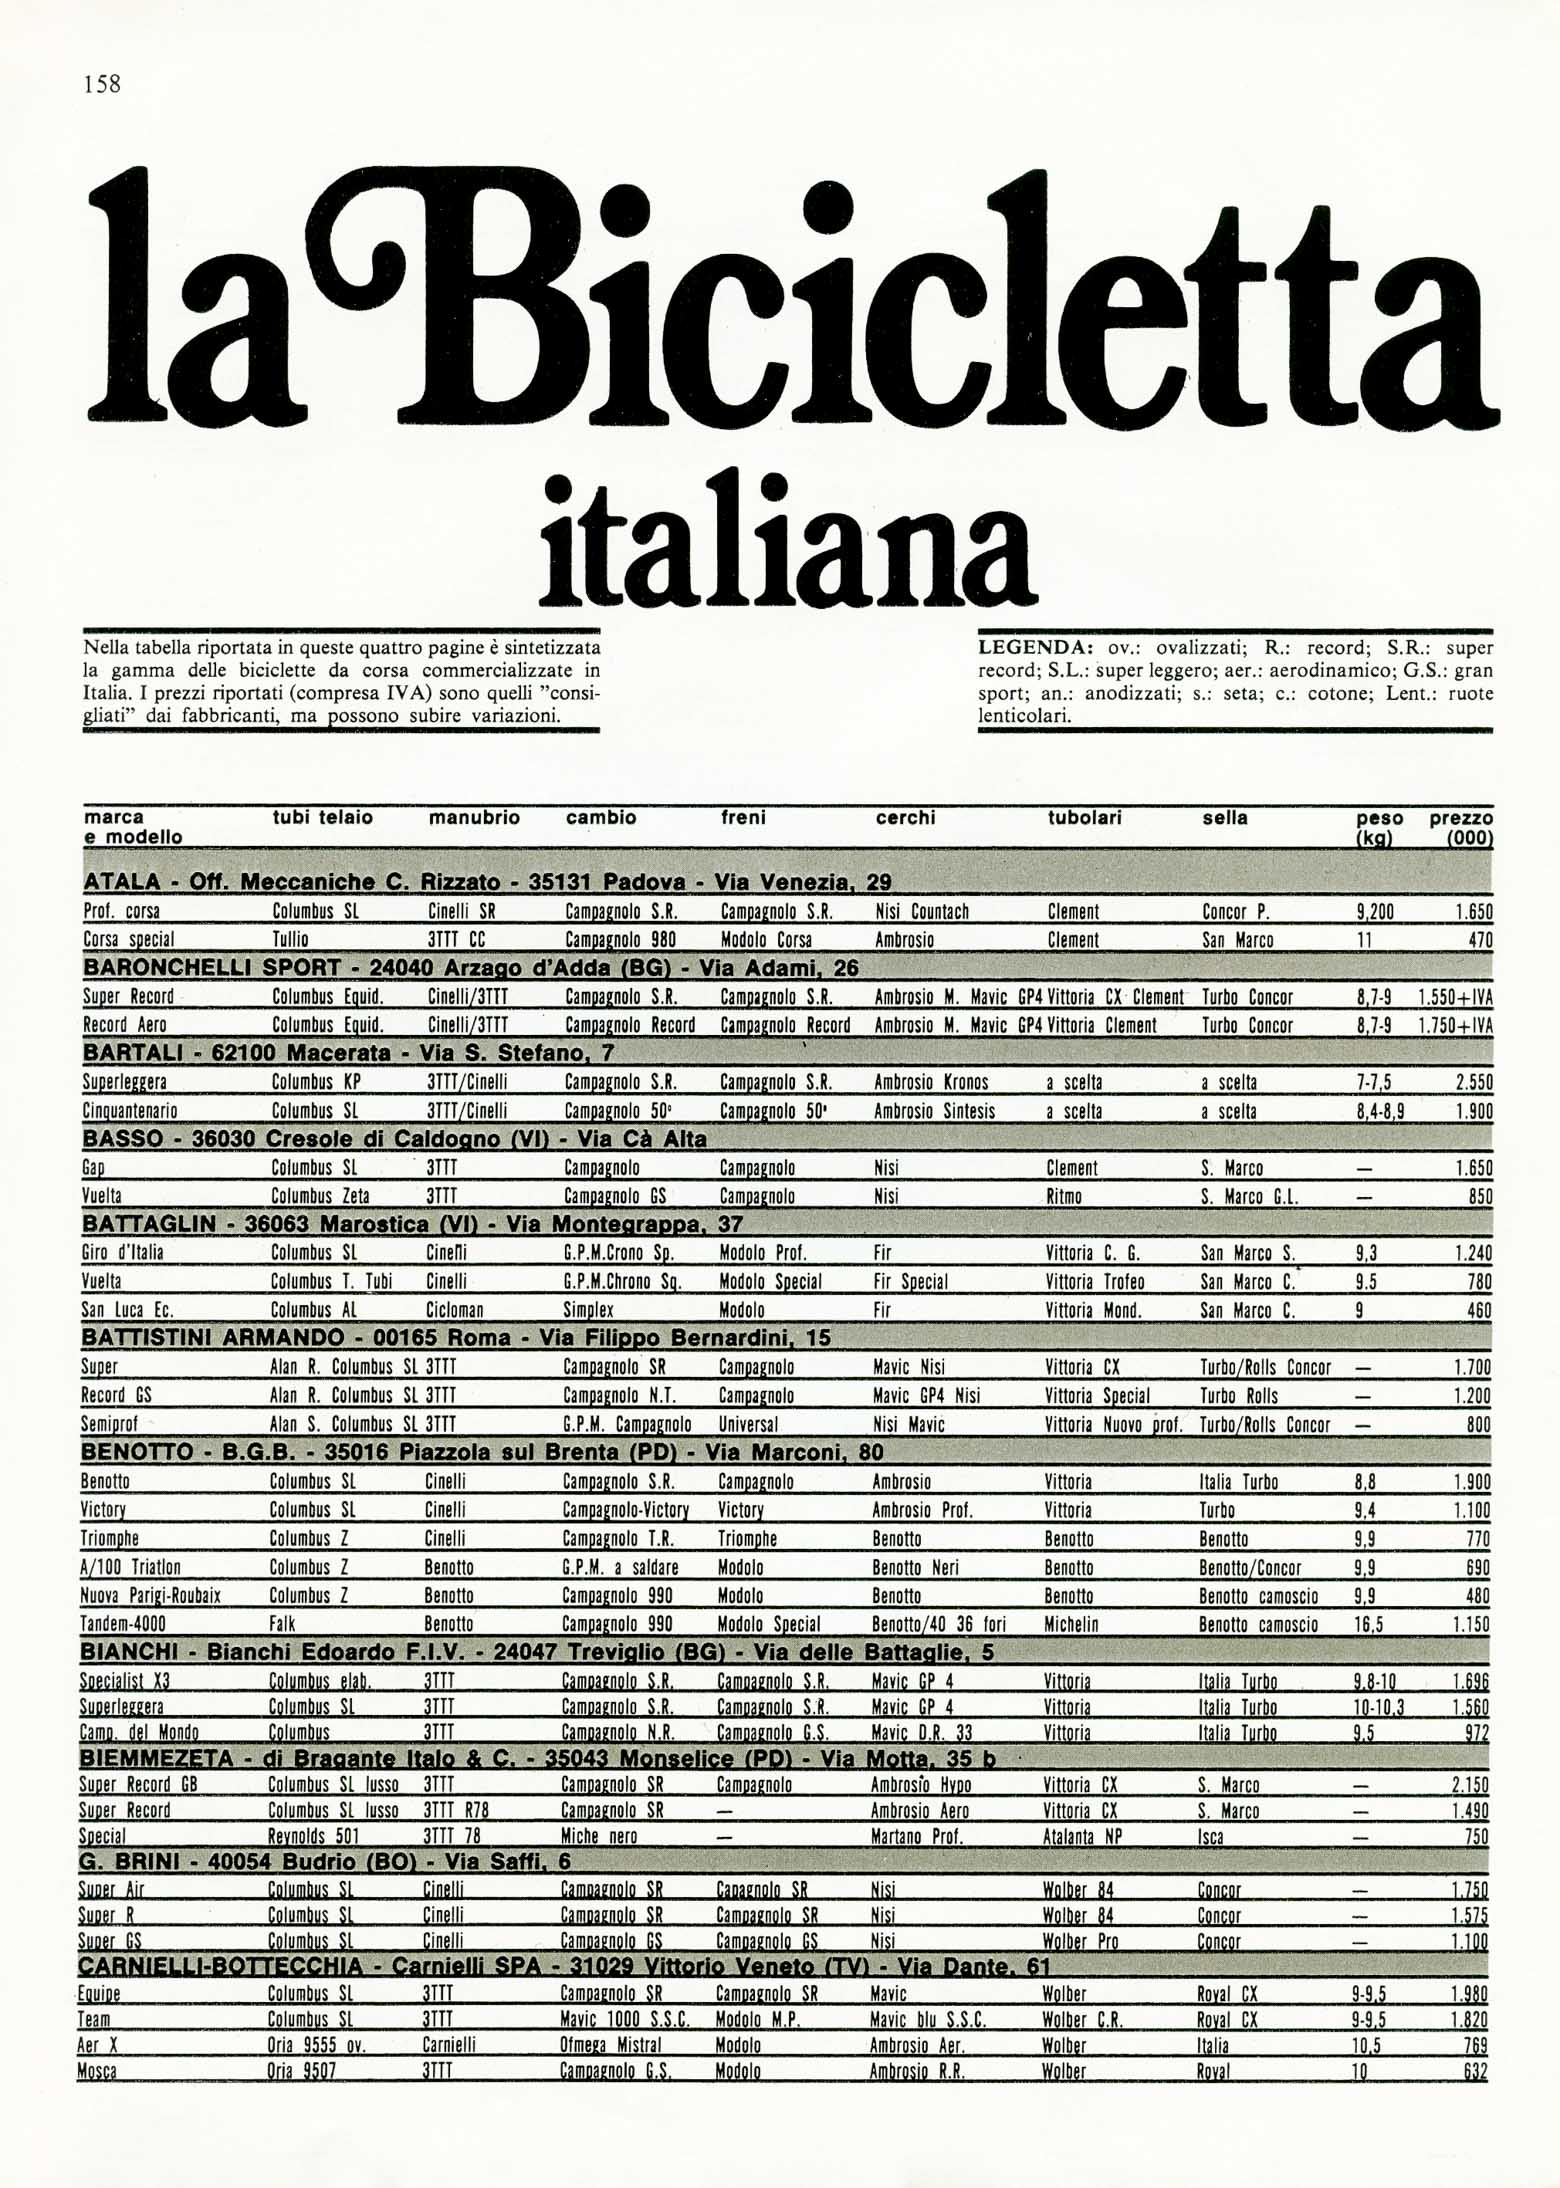 BiciSport 1985-04 la Bicicletta italiana scan 01 main image